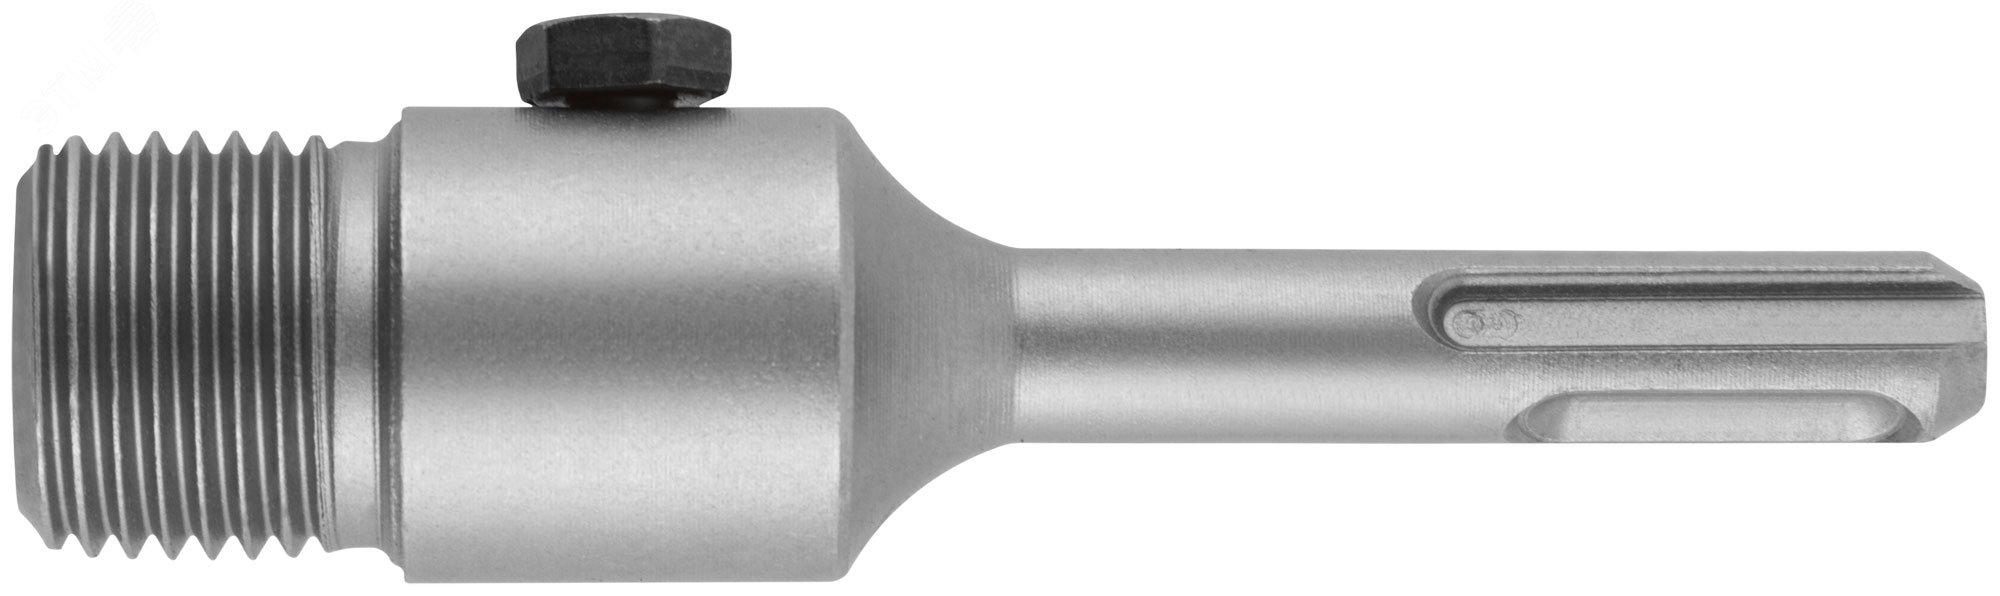 Удлинитель с хвостовиком SDS-PLUS для коронок по бетону, резьба М22, длина 100 мм 33451 FIT - превью